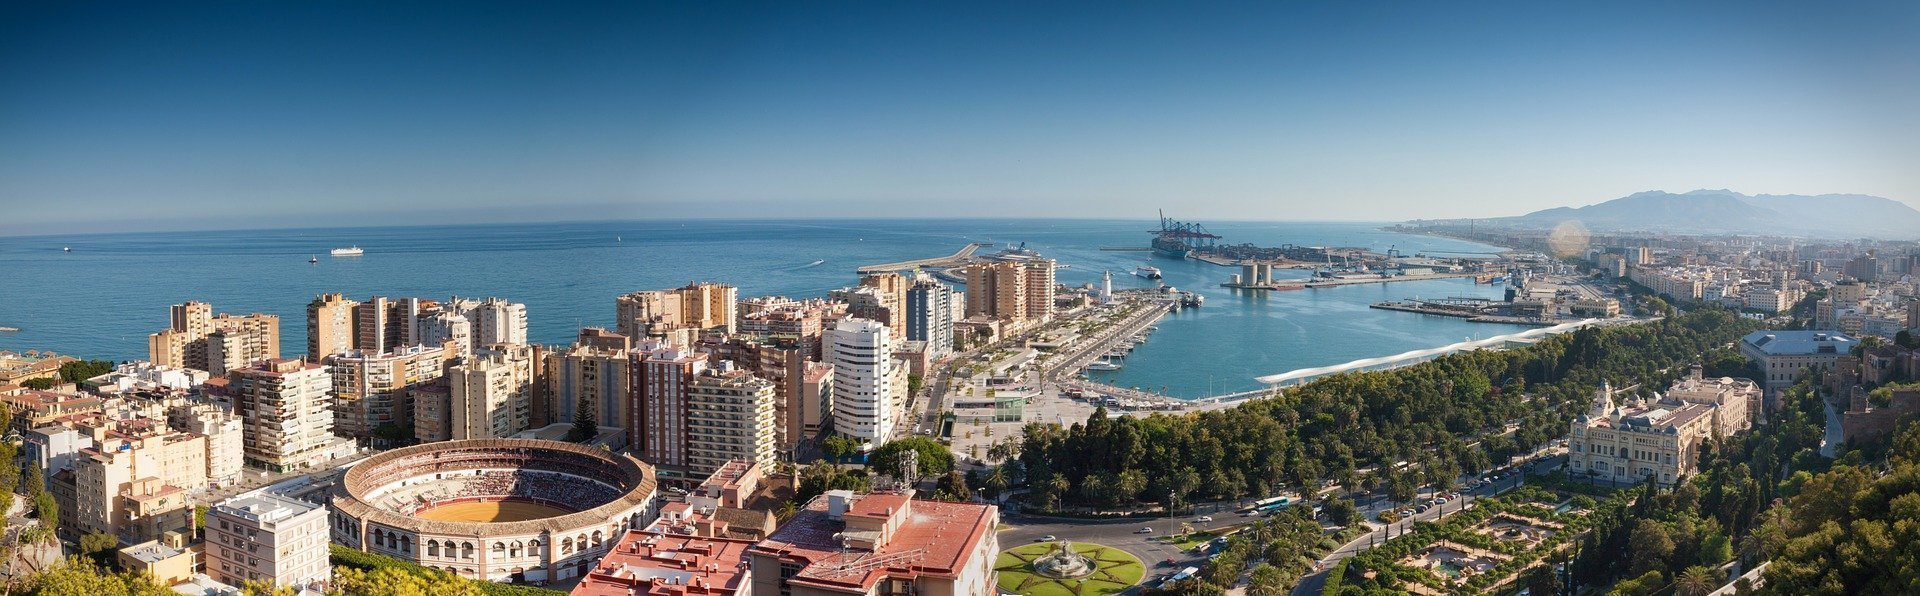 Top 10 cele mai frumoase locuri din Spania. Unde mergem după ce trece pandemia